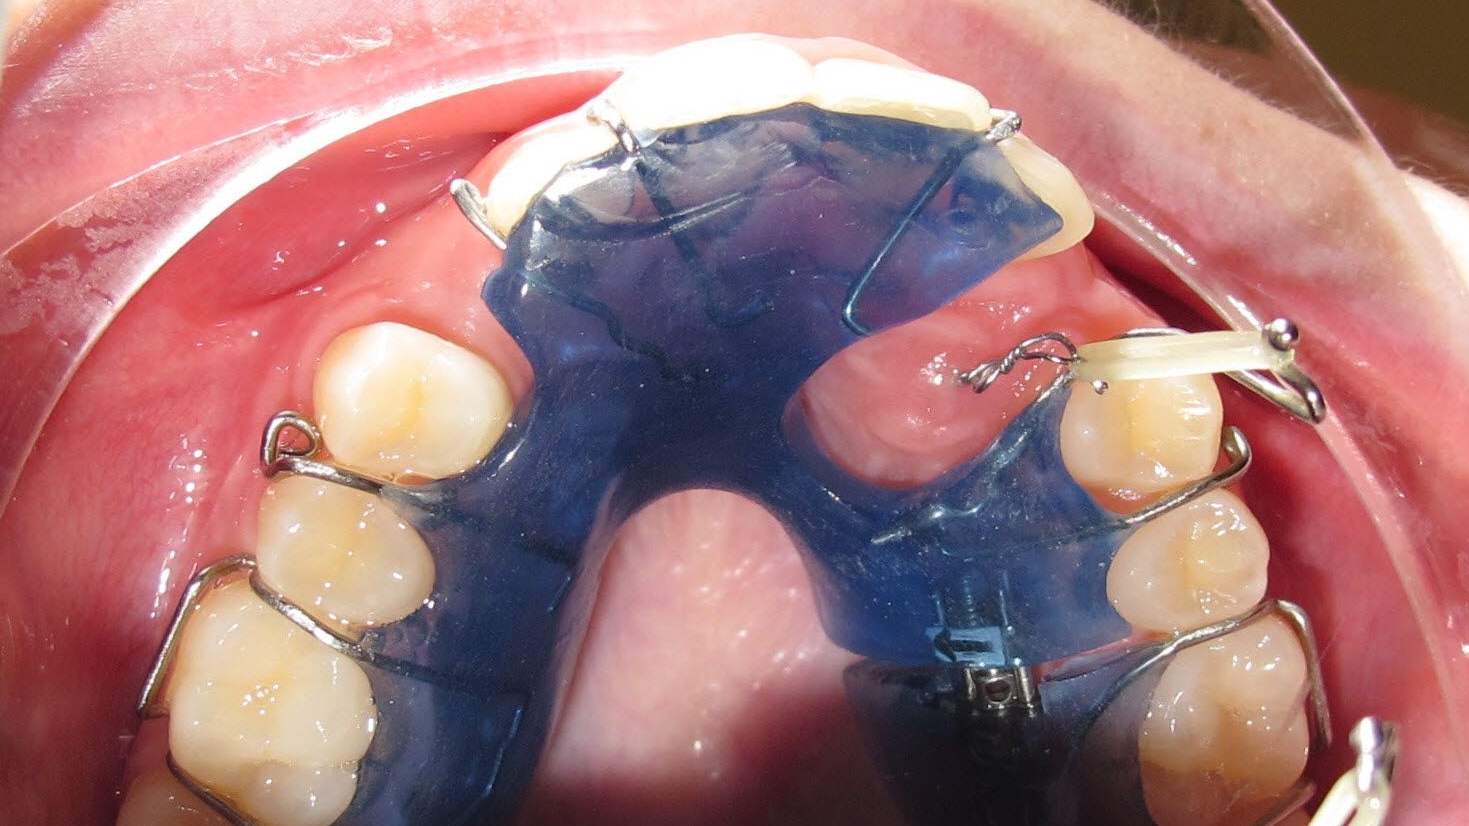 Einzelplatte mit Freilegungshaken. Patientin zieht den Eckzahn mit einem Gummiring an der Drahtschlaufe in die Zahnreihe.